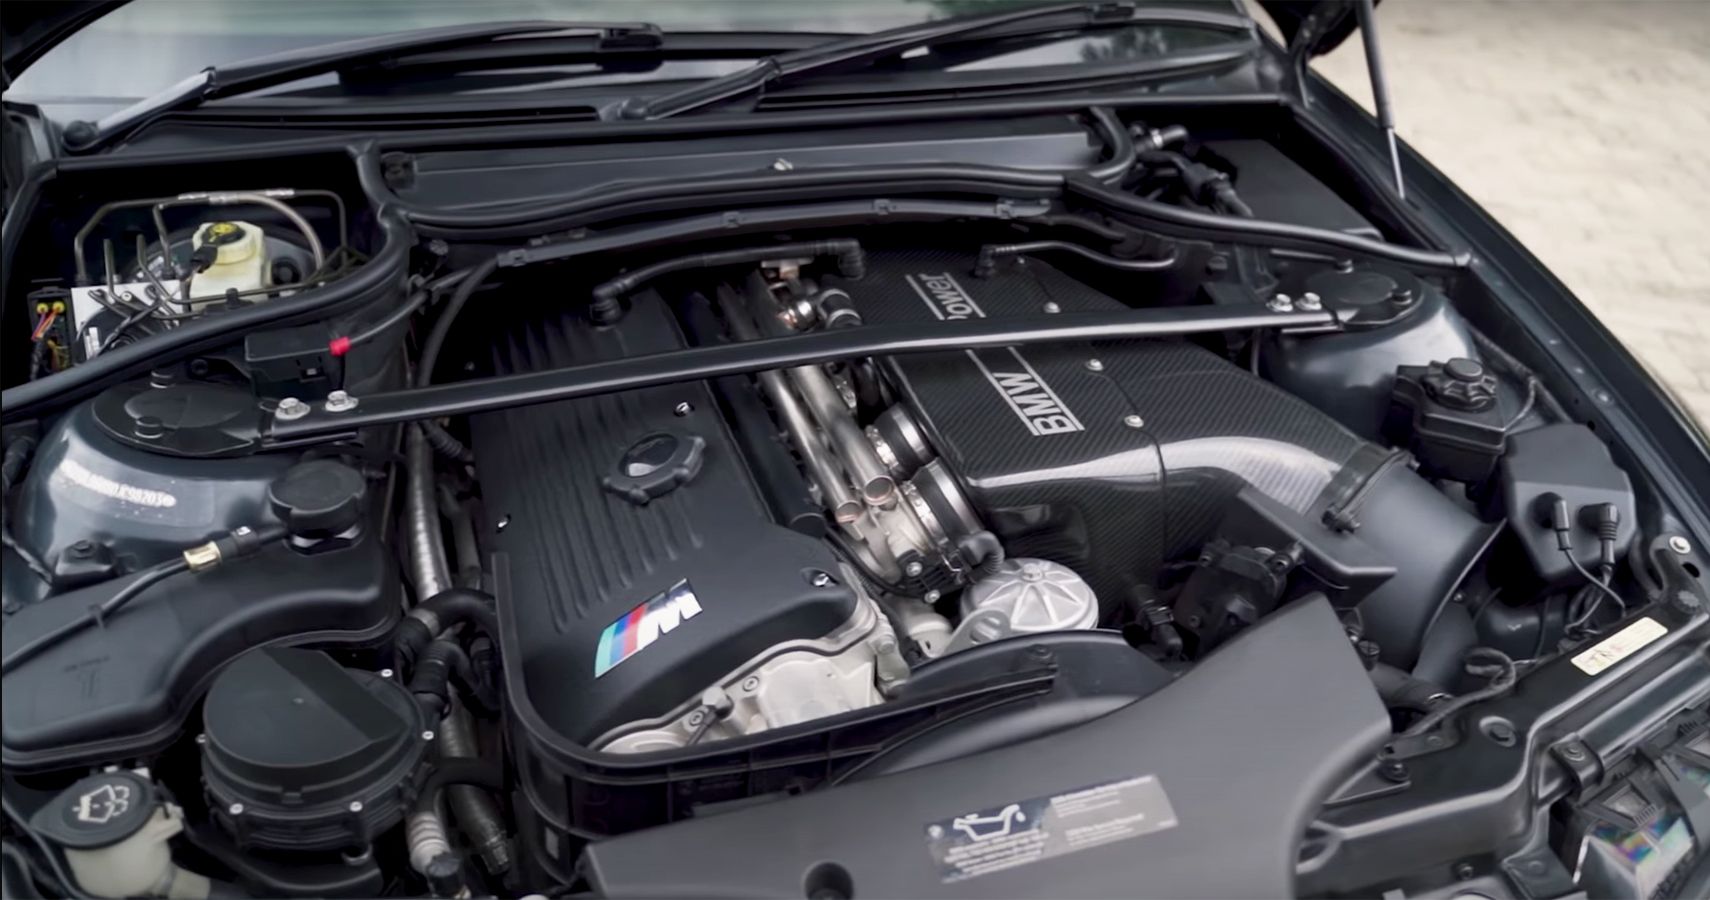 BMW M3 CLS engine